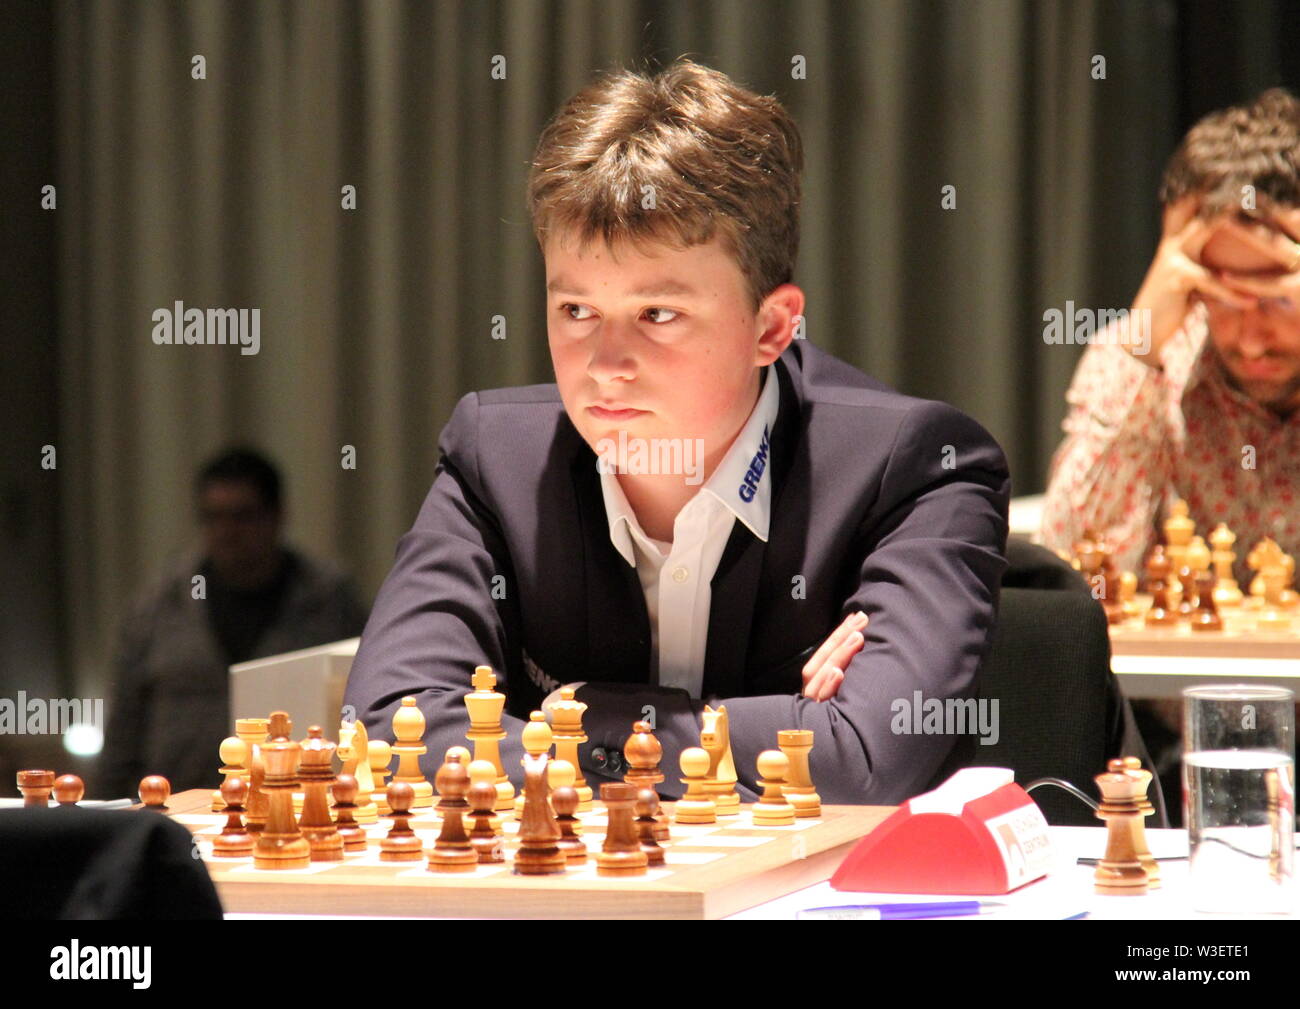 GM Vincent Keymer (GER), Biel International Chess Festival